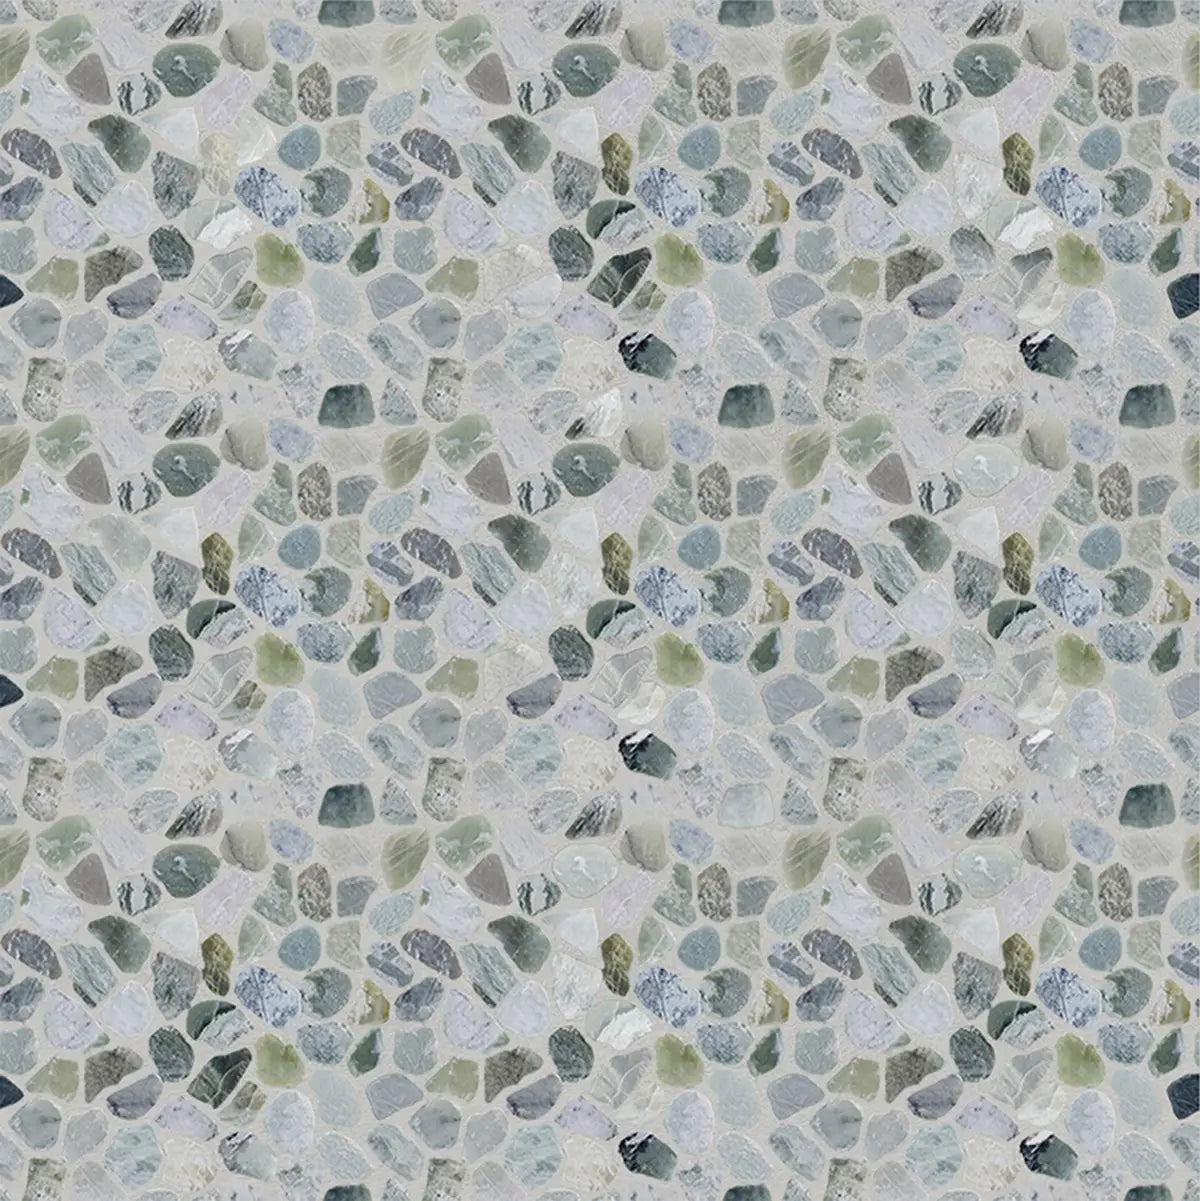 Ocean Mosaic Tile, Ocean Green Sliced Pebble Mosaic Wall & Floor Tile